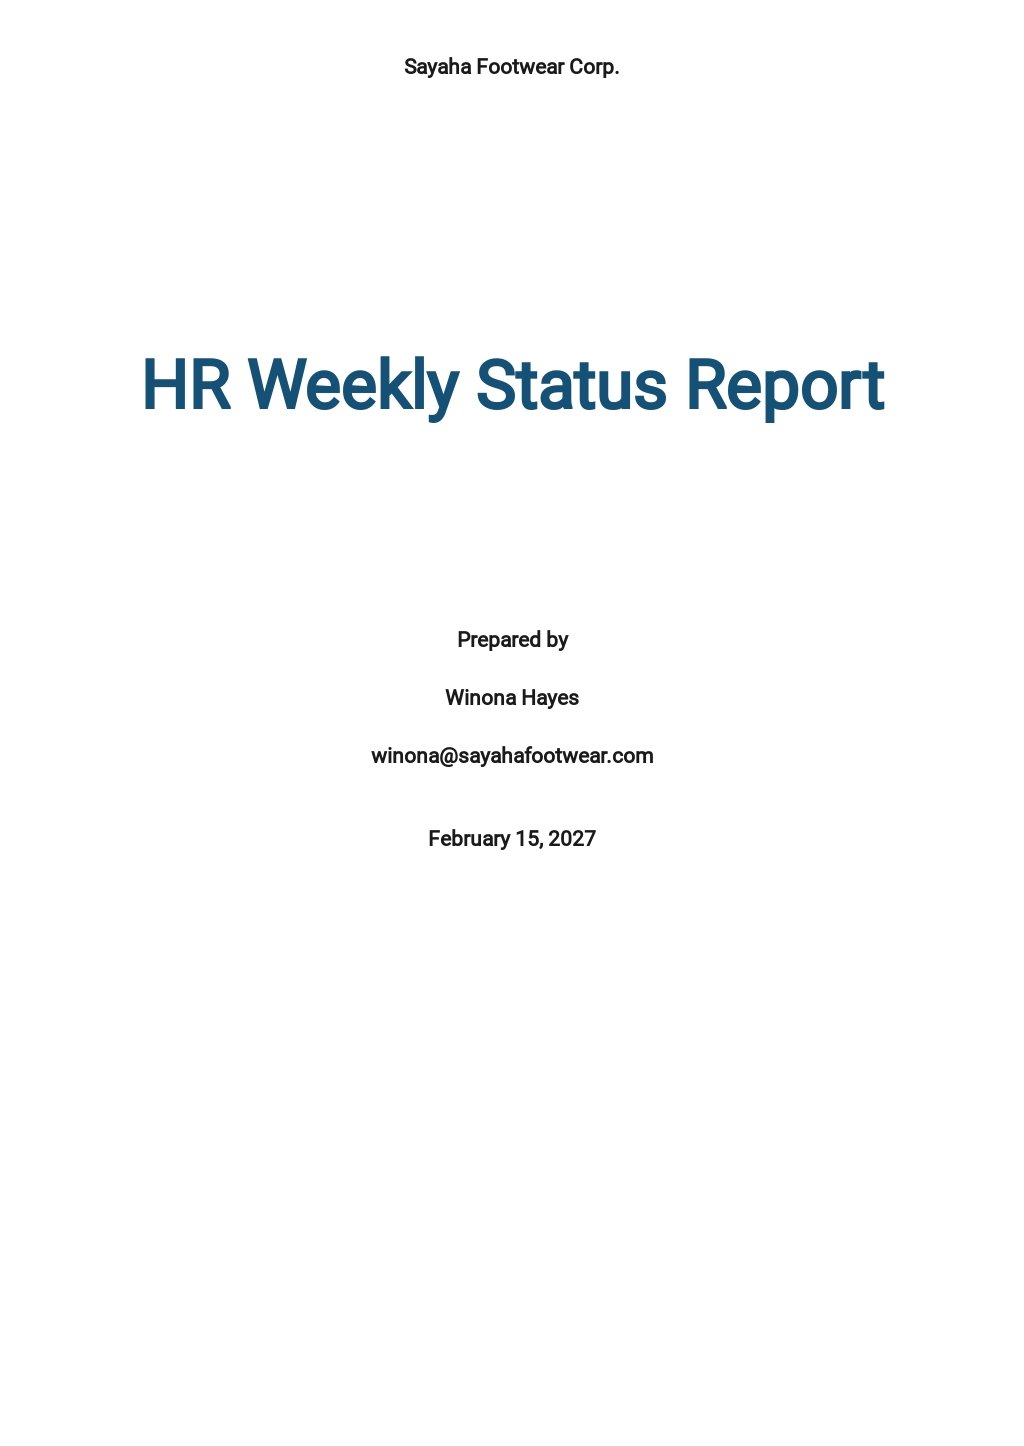 HR Weekly Status Report Template.jpe